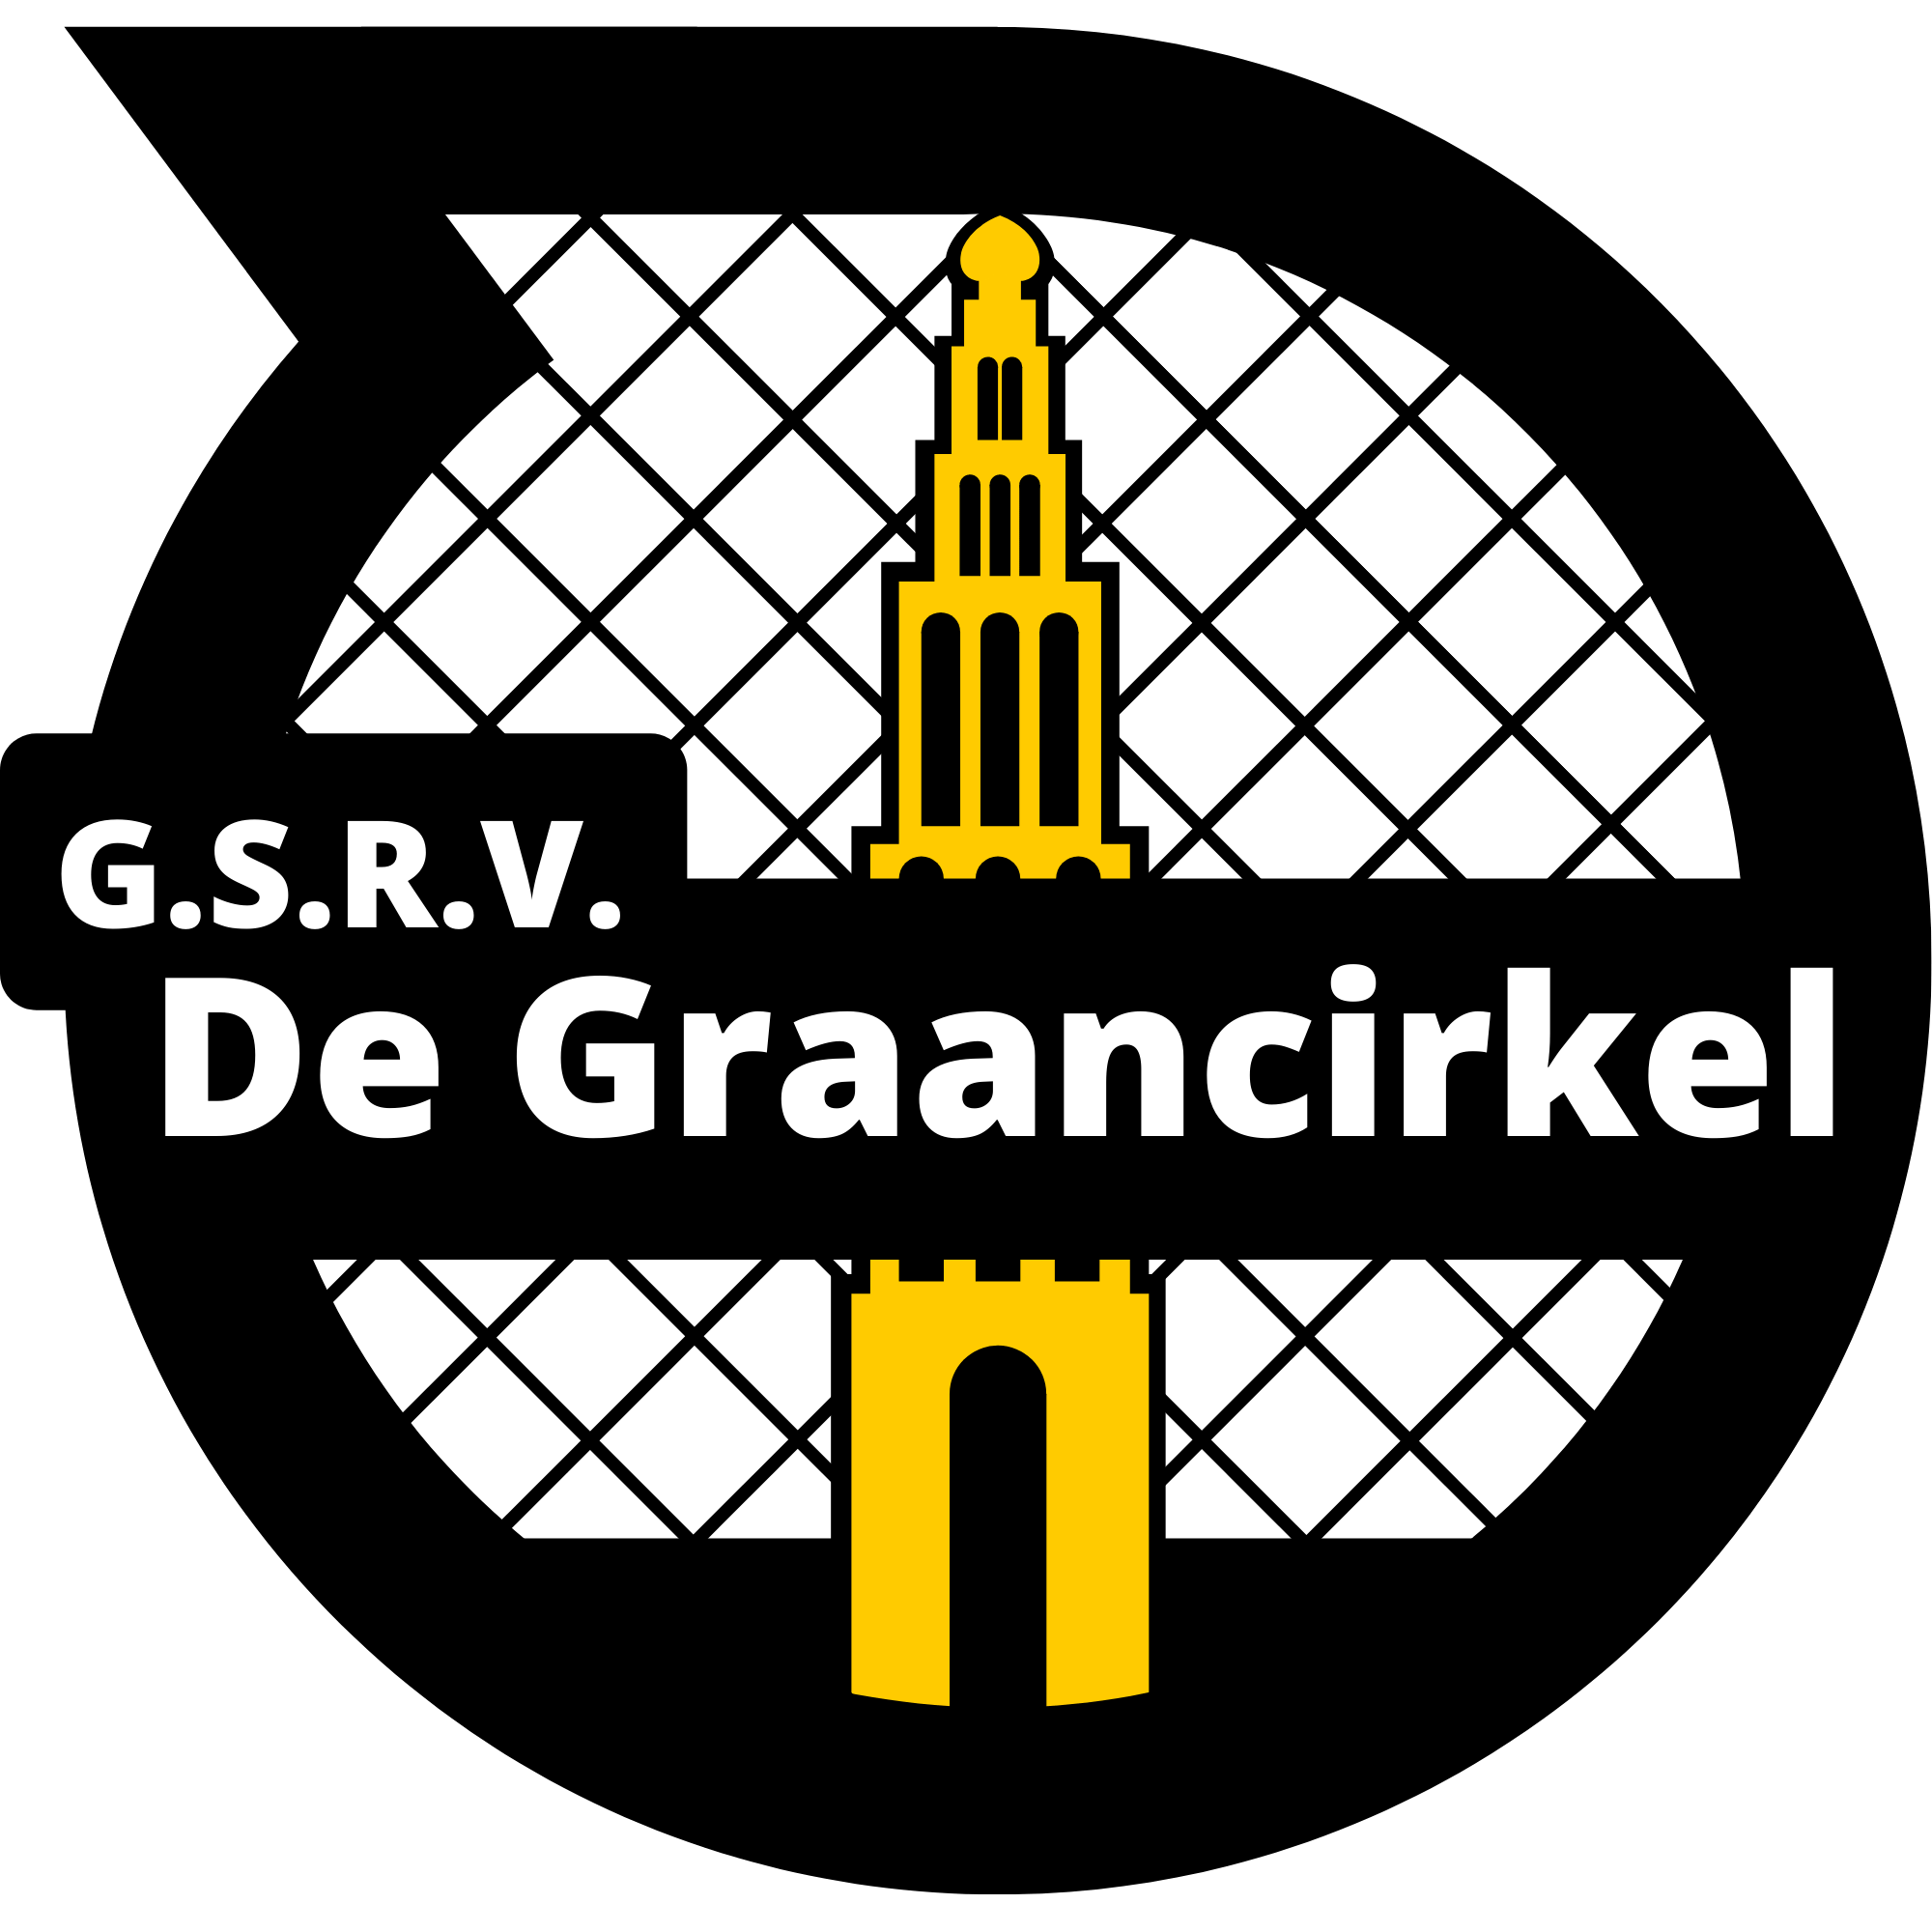 G.S.R.V De Graancirckel logo